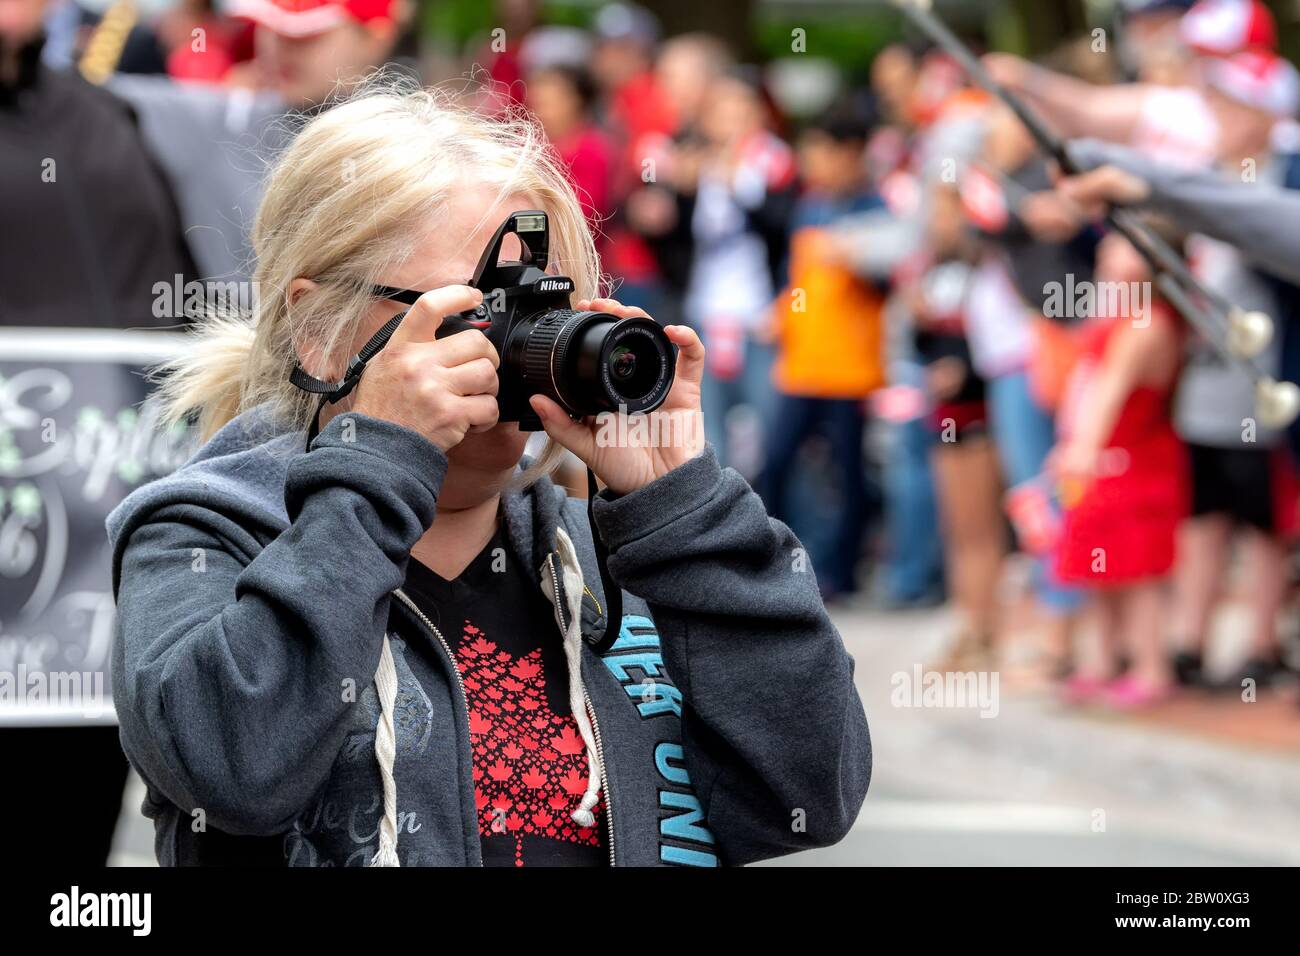 Saint John, Nouveau-Brunswick, Canada - le 1er juillet 2019 : un photographe amateur prend une photo au défilé de la fête du Canada à l'aide d'un appareil photo Nikon. Banque D'Images